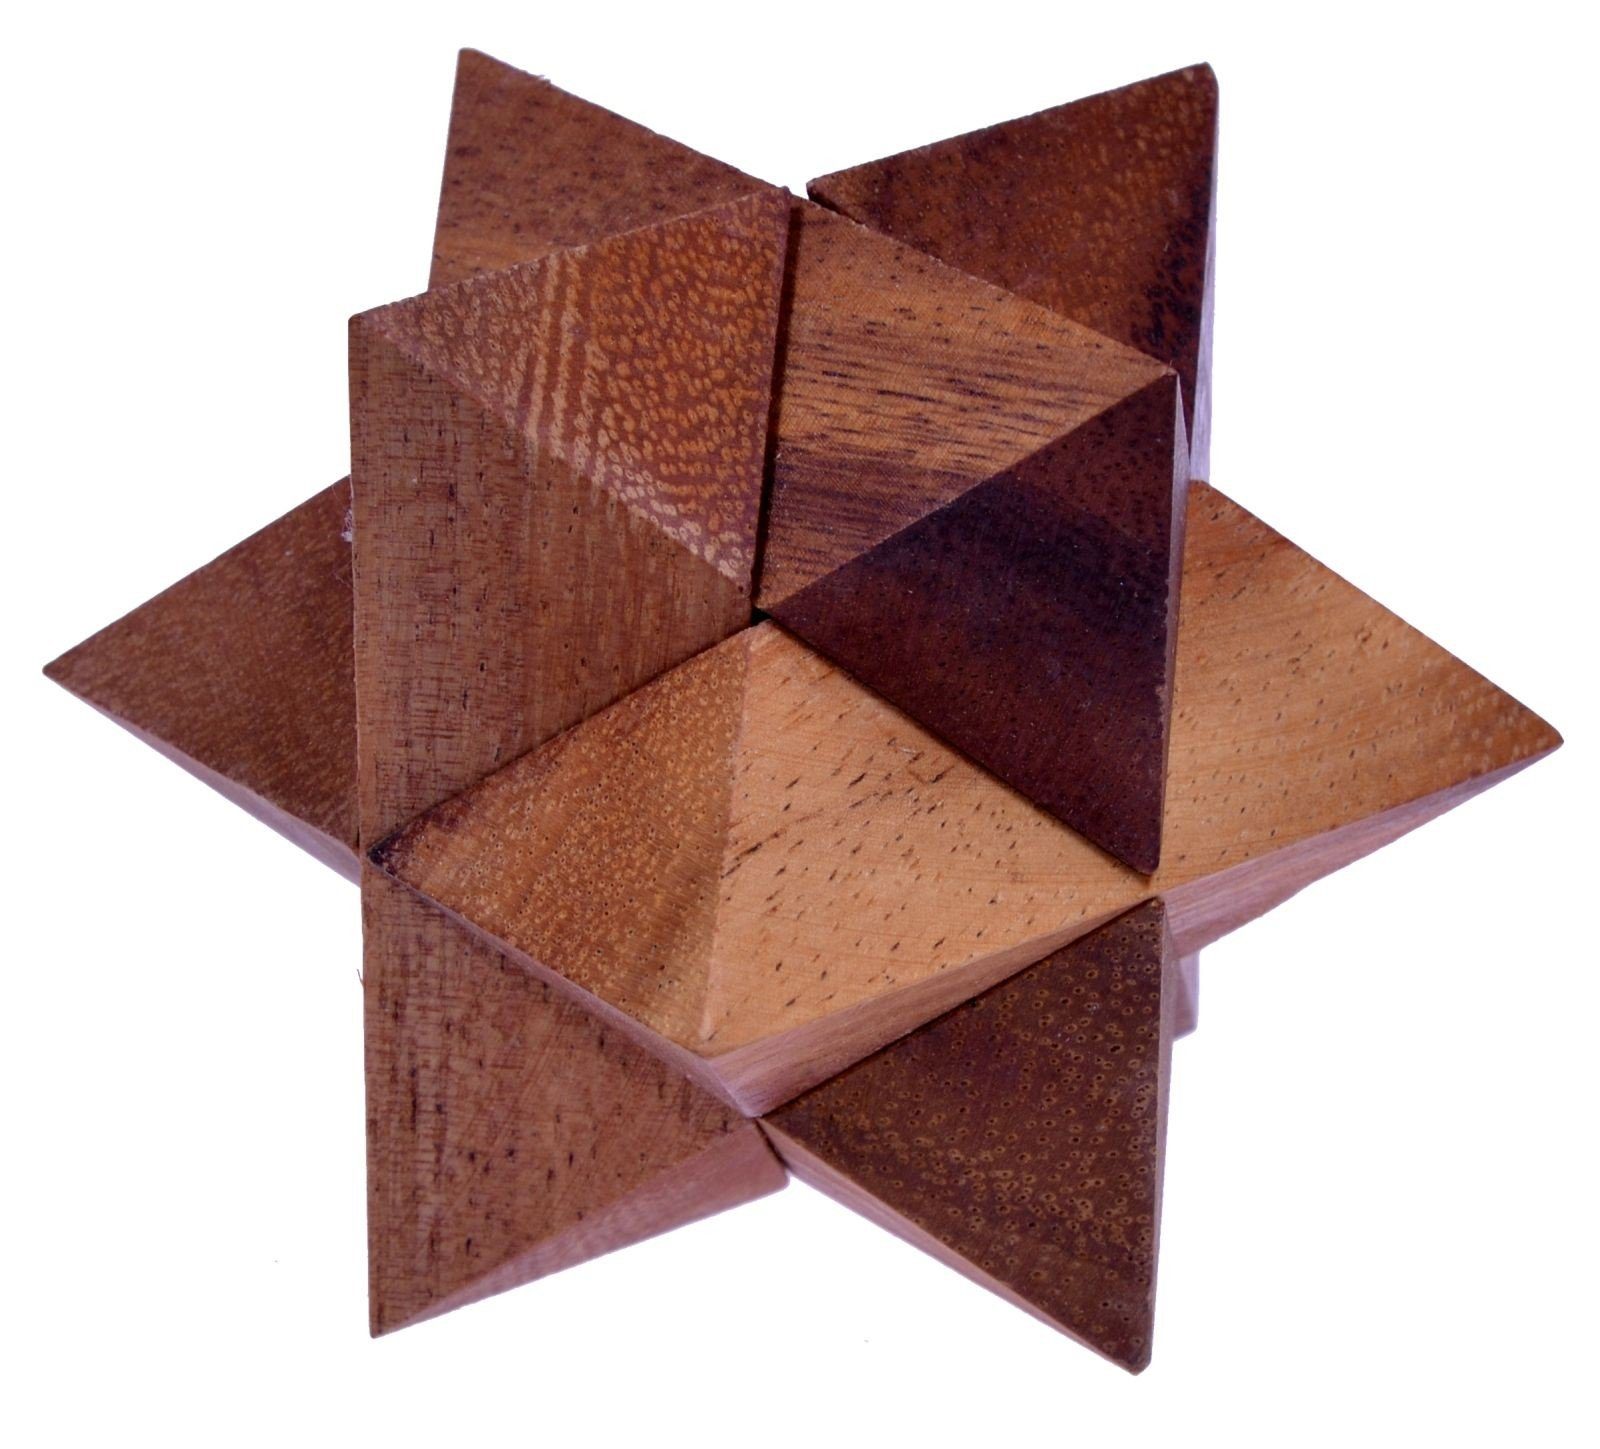 Logoplay Holzspiele Spiel, Stern Gr. M - 7 cm - Star - 3D Puzzle - Knobelspiel aus HolzHolzspielzeug